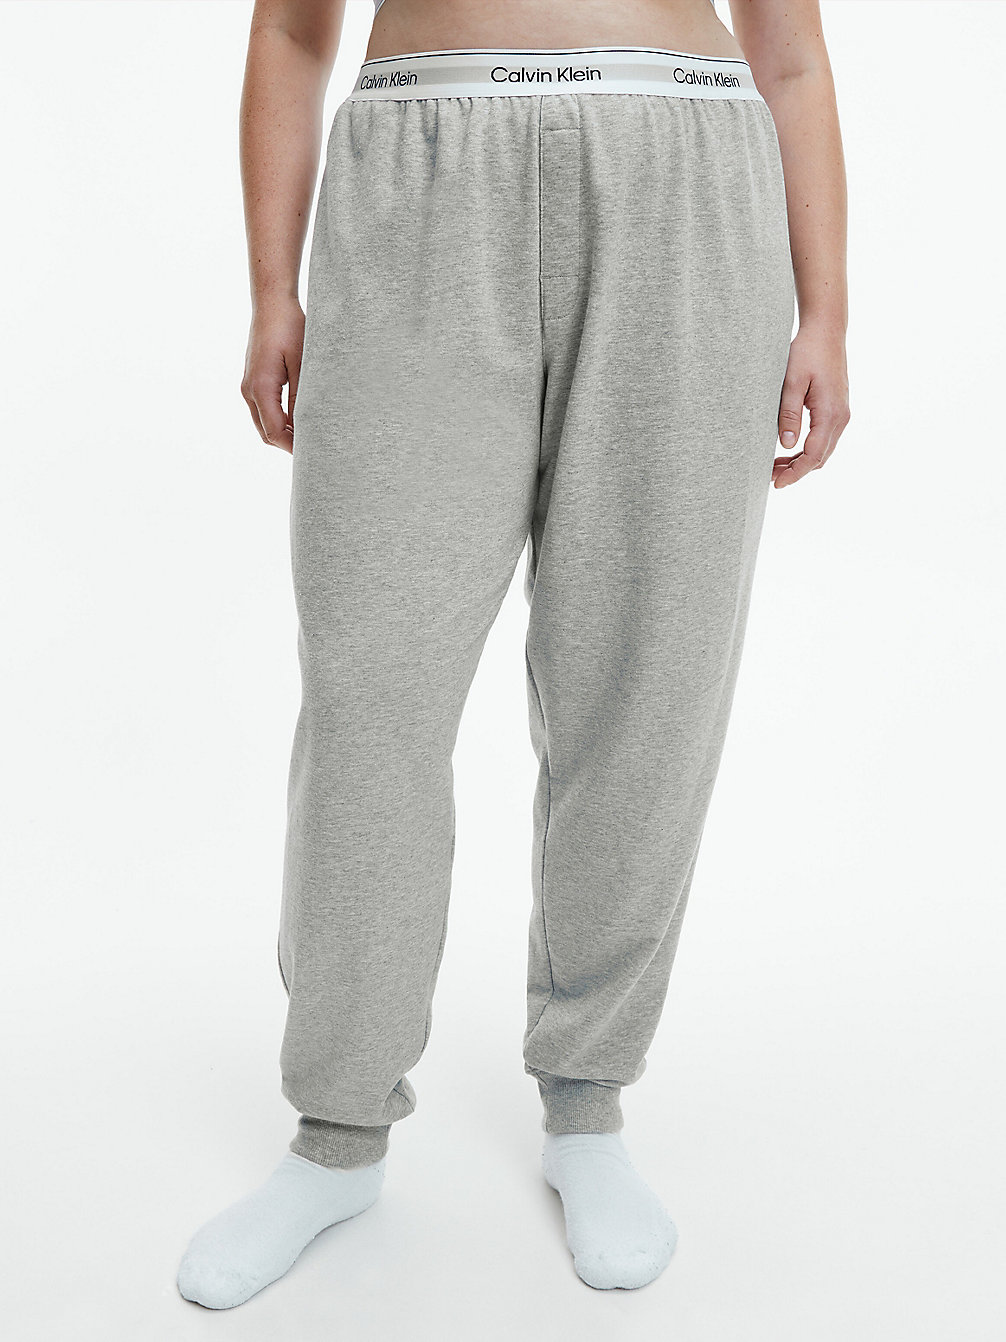 GREY HEATHER > Пижамные штаны плюс-сайз - Modern Cotton > undefined Женщины - Calvin Klein